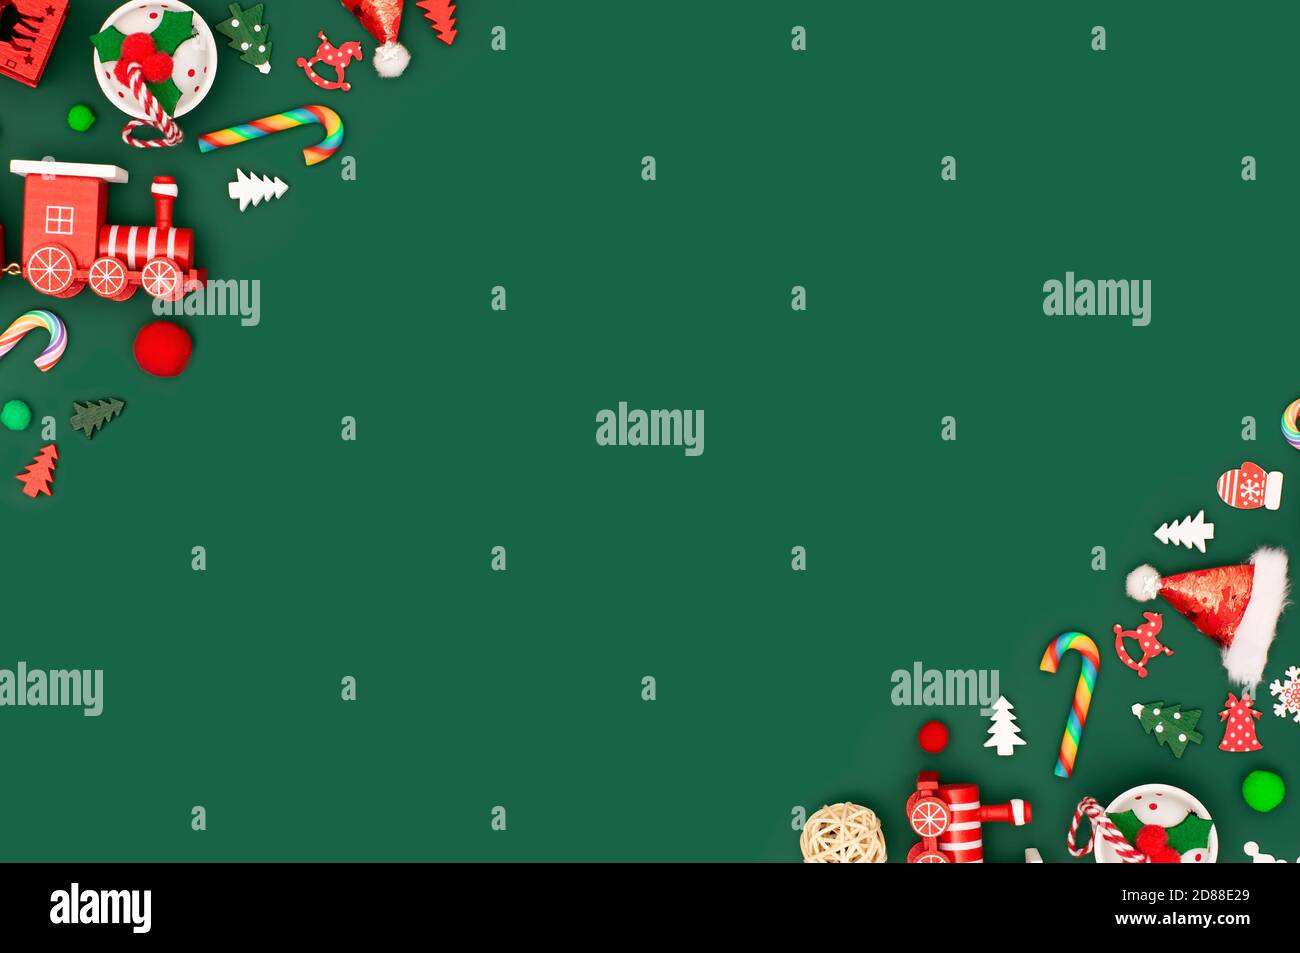 Fondo verde de Navidad o año Nuevo con bordes de juguetes rojos diagonales. Juguetes tradicionales y retro en las esquinas. Campanas, cañas de lollipop, copos de nieve Foto de stock